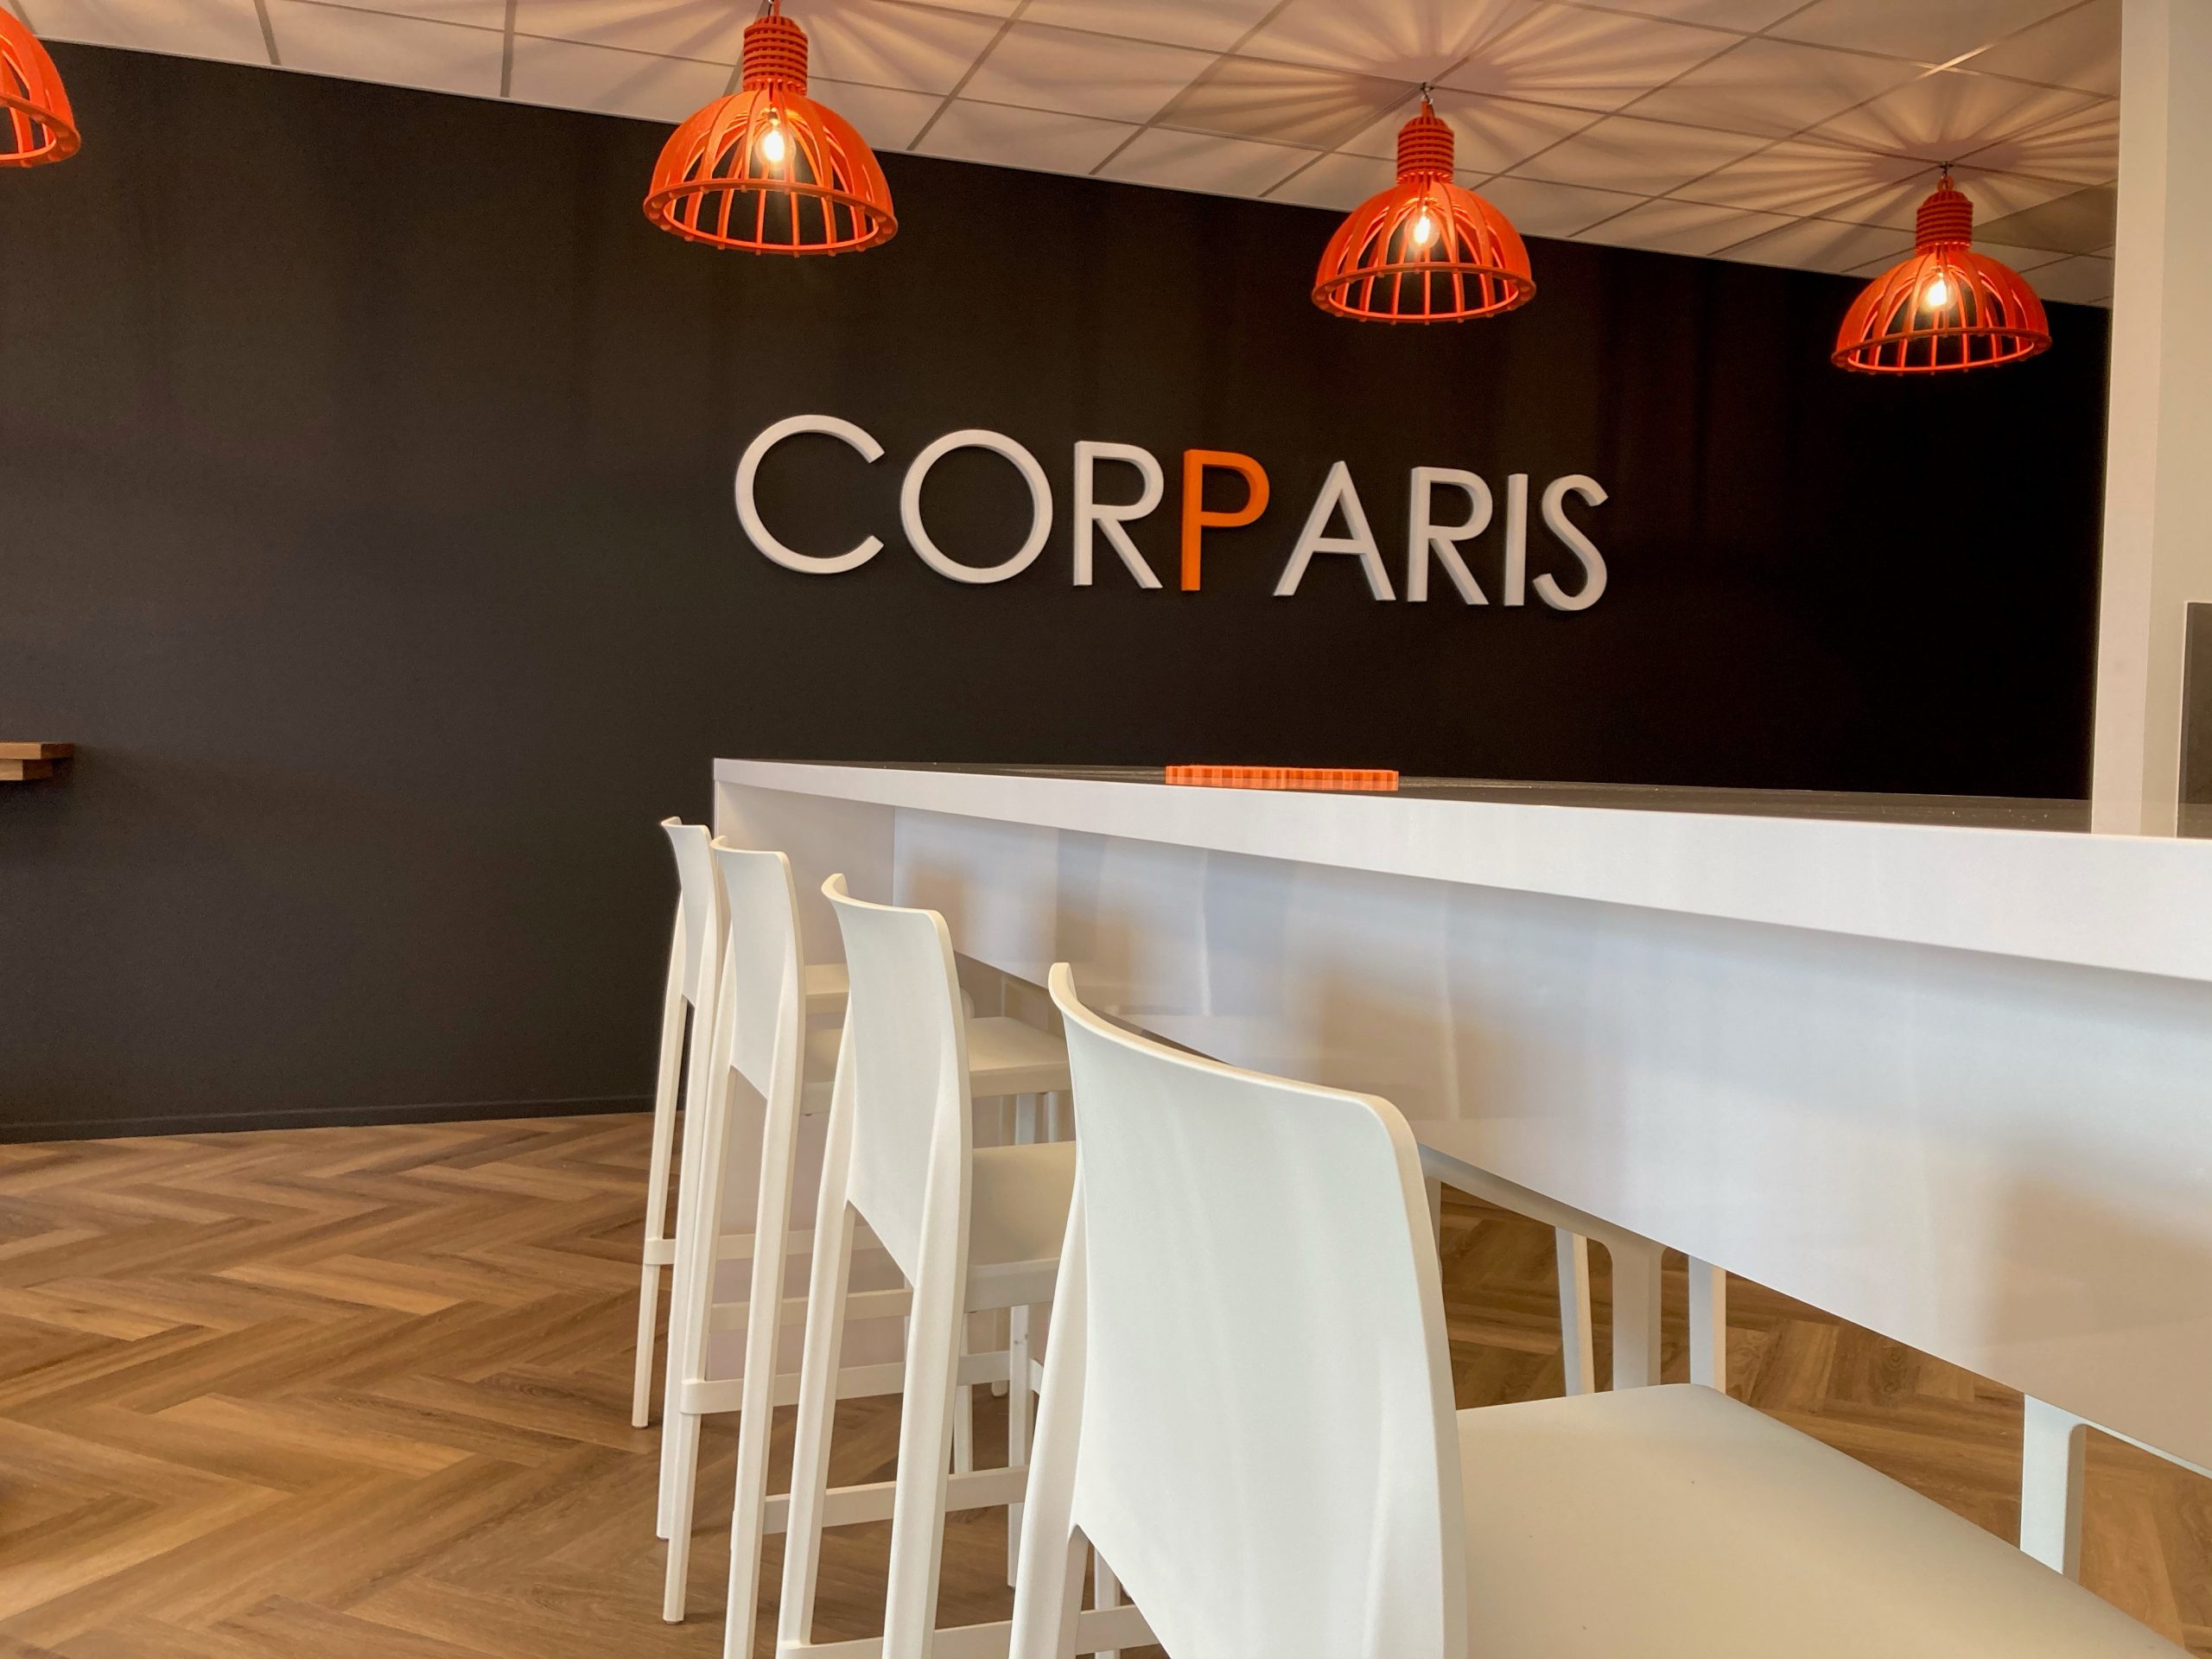 Piepschuim 3D logo van Corparis op muur